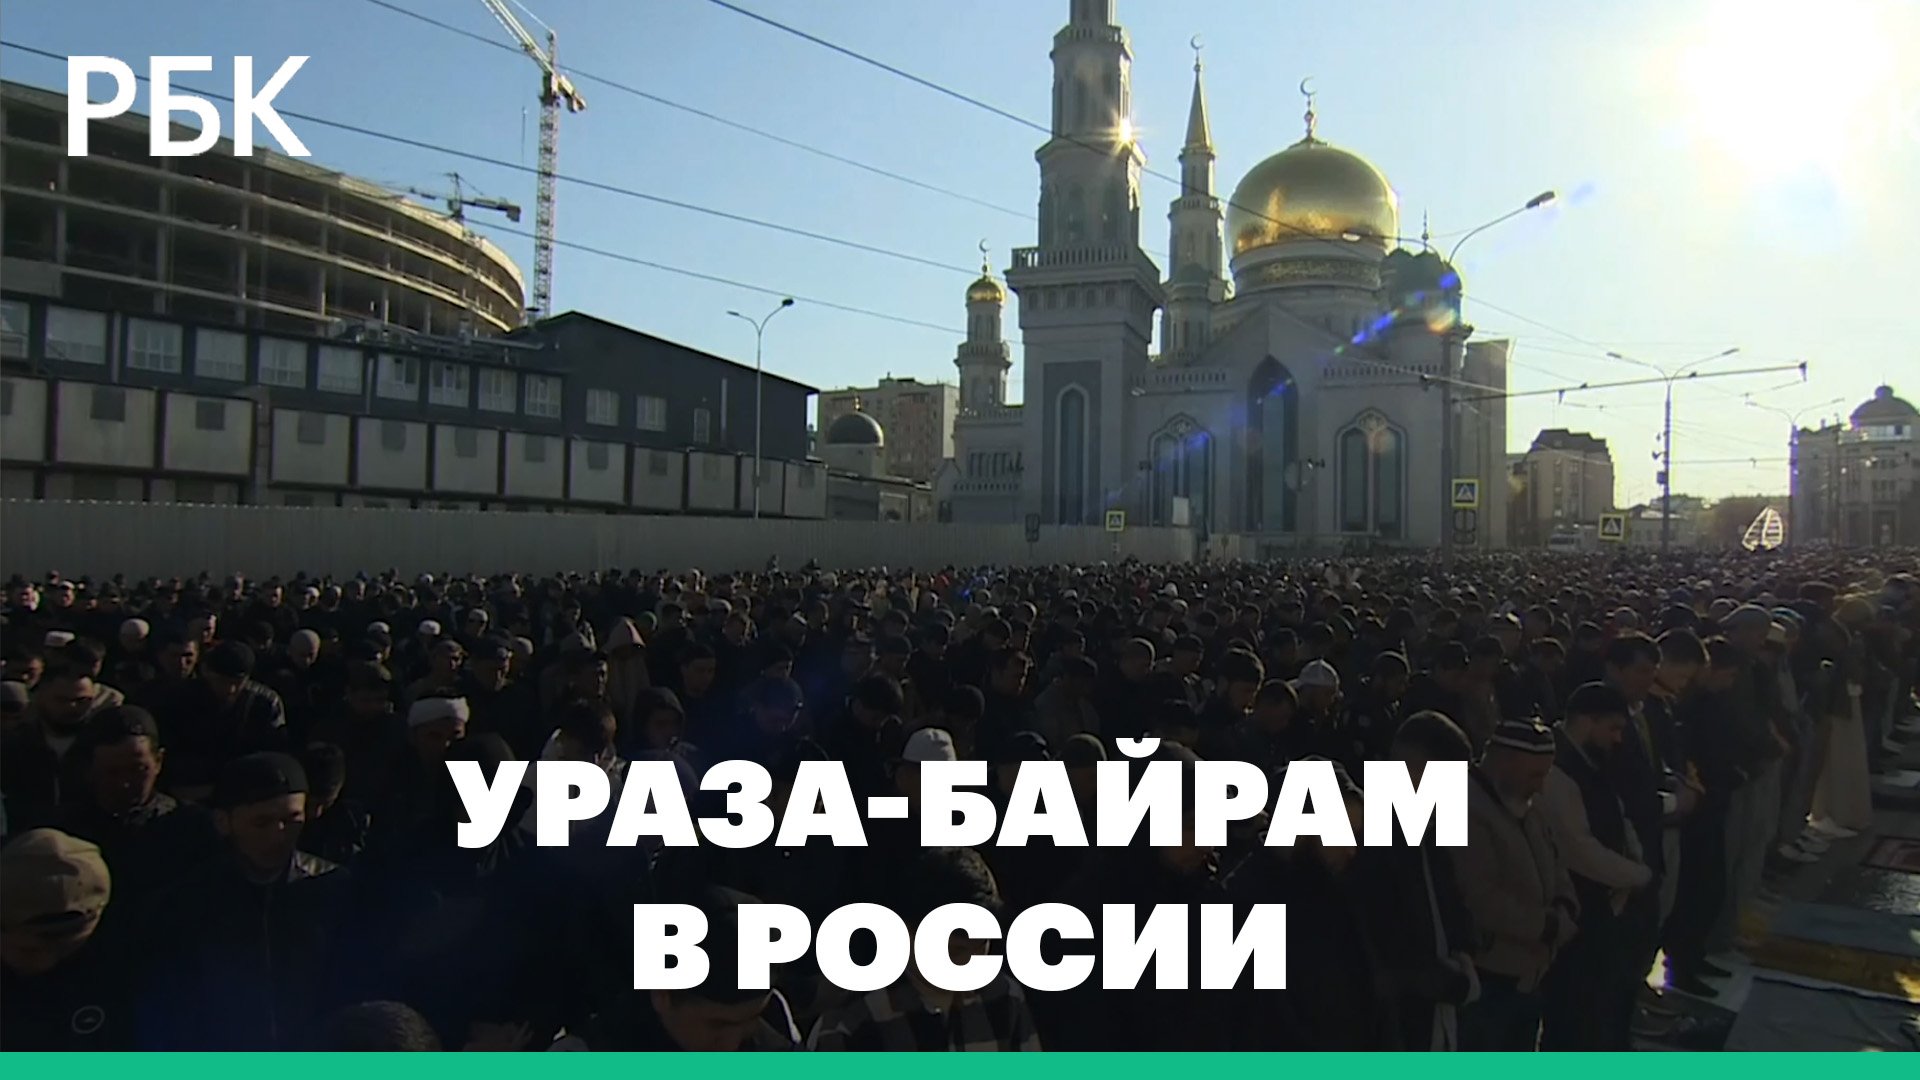 Завтра будет ураза байрам. Праздники мусульман. Ураза байрам. Ураза байрам в Москве. Мусульмане в России.